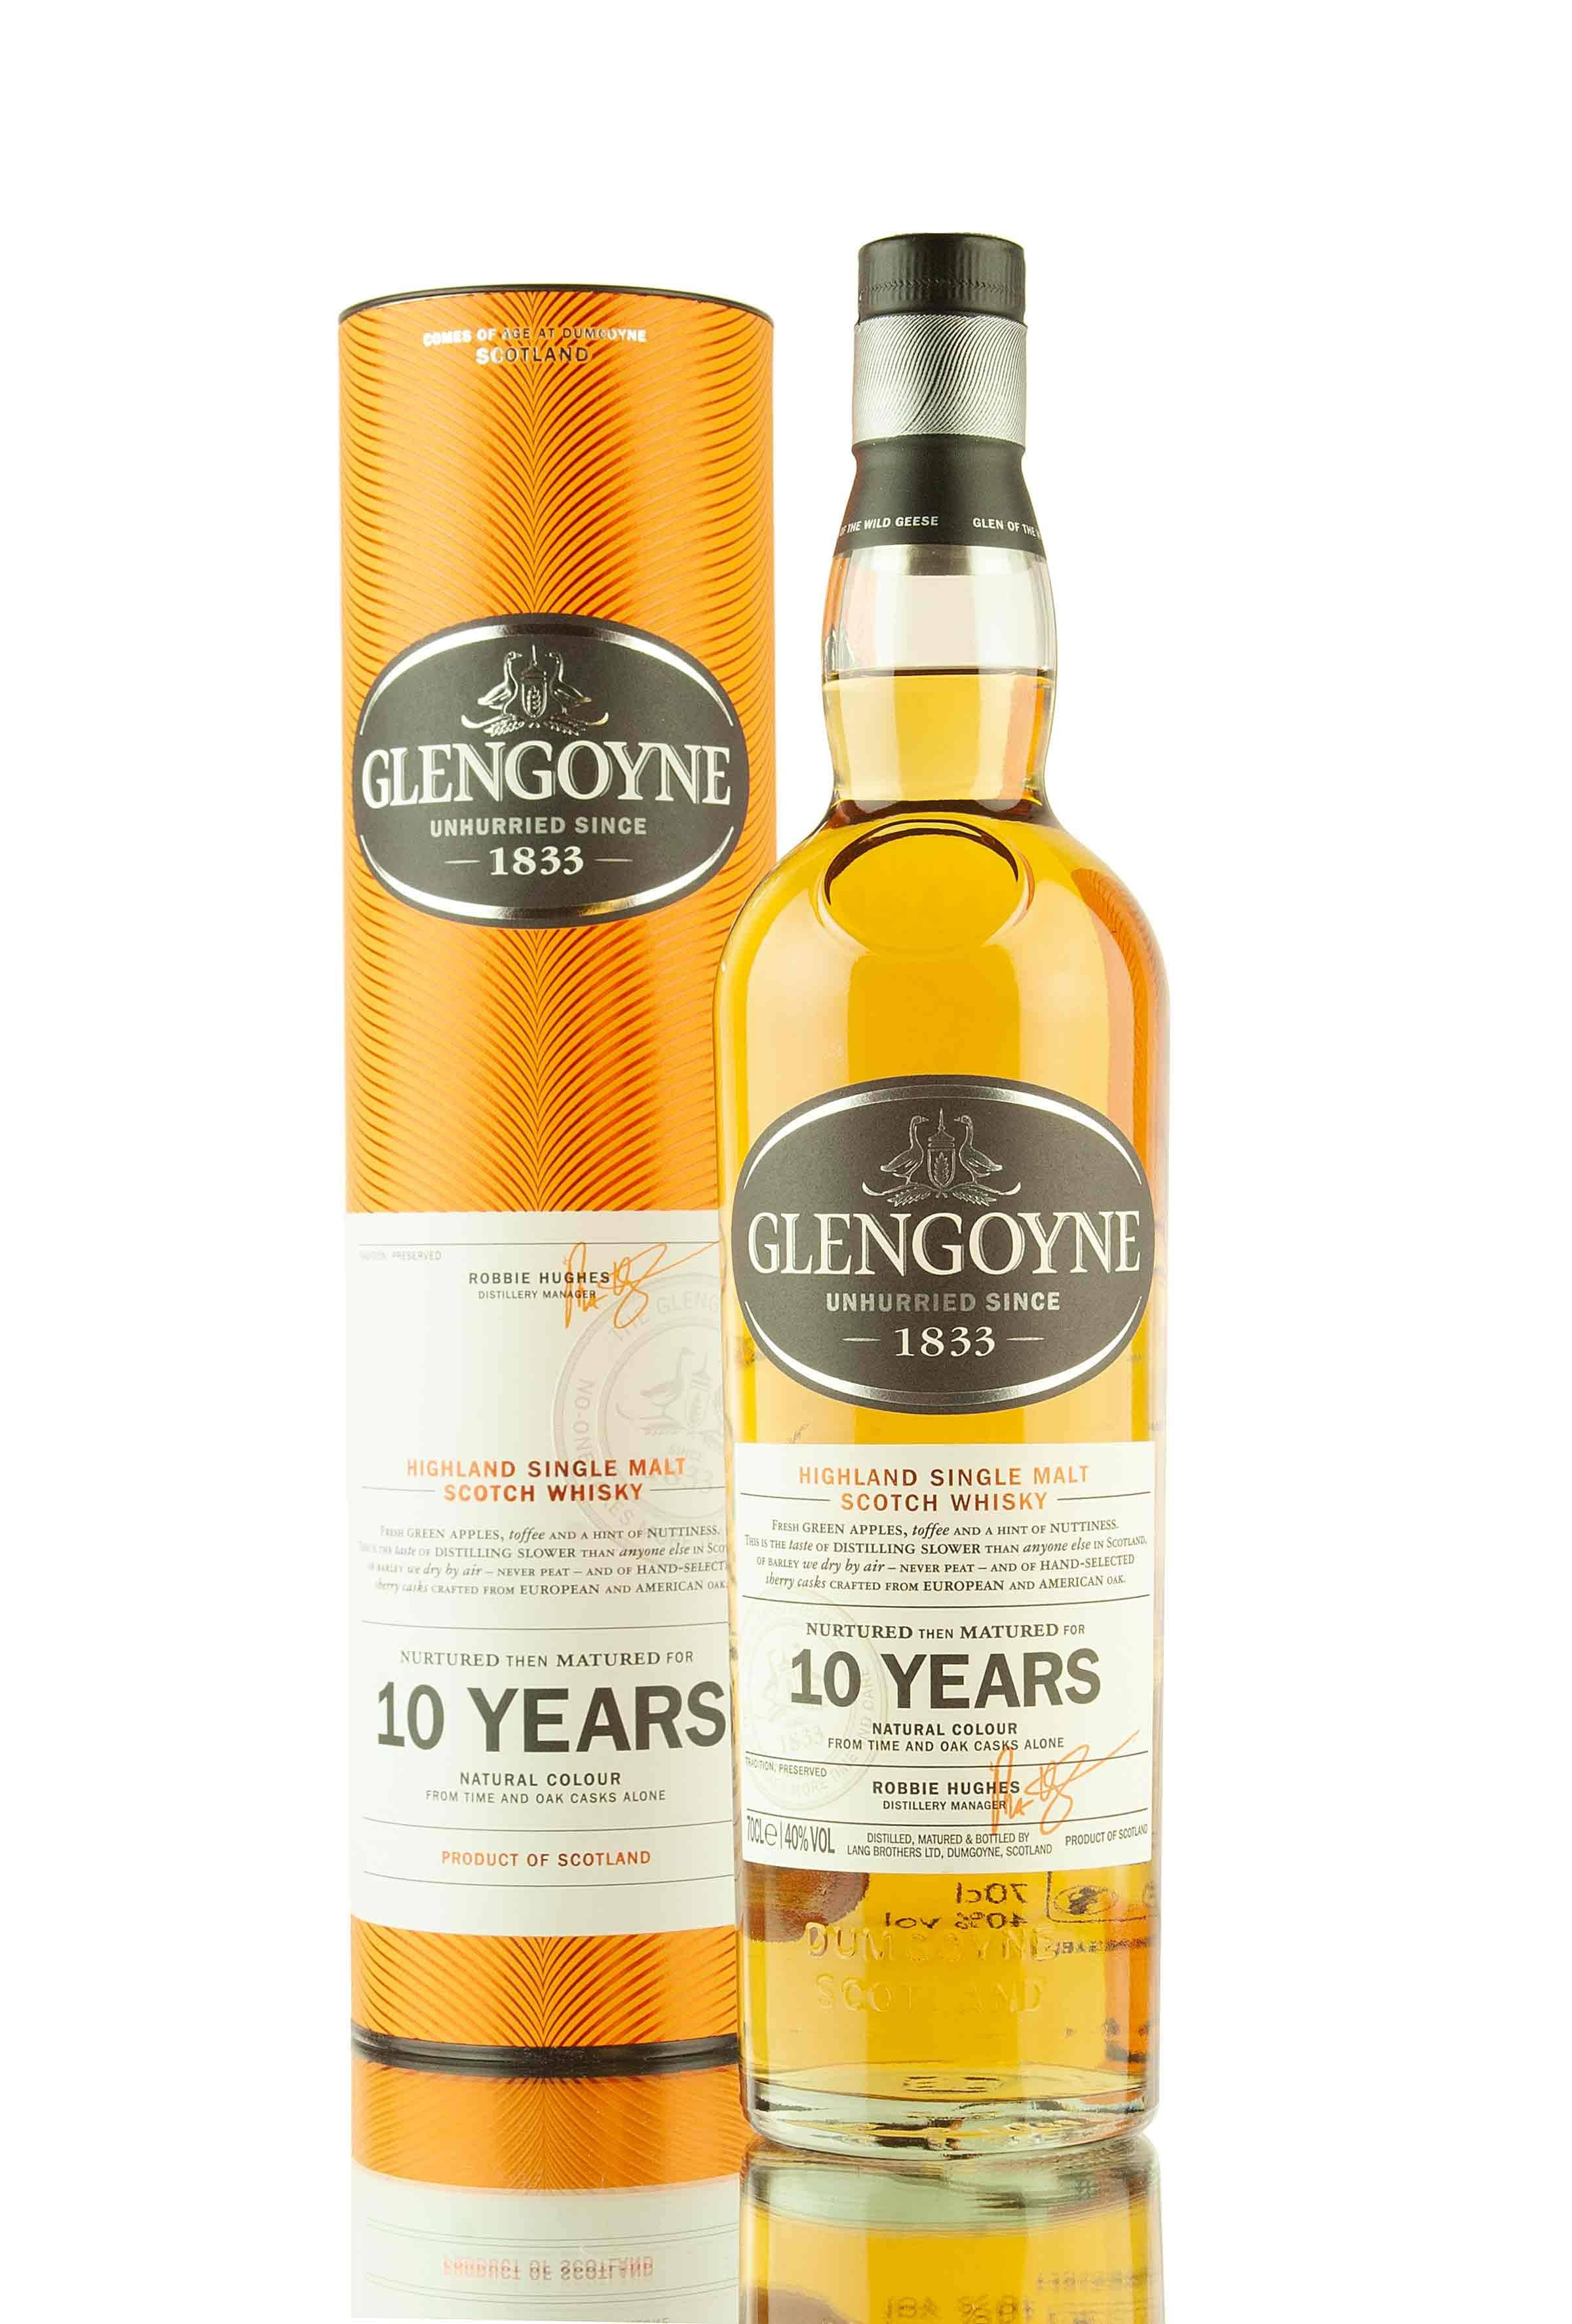 Glengoyne Highland Single Malt Scotch Whisky - 700ml